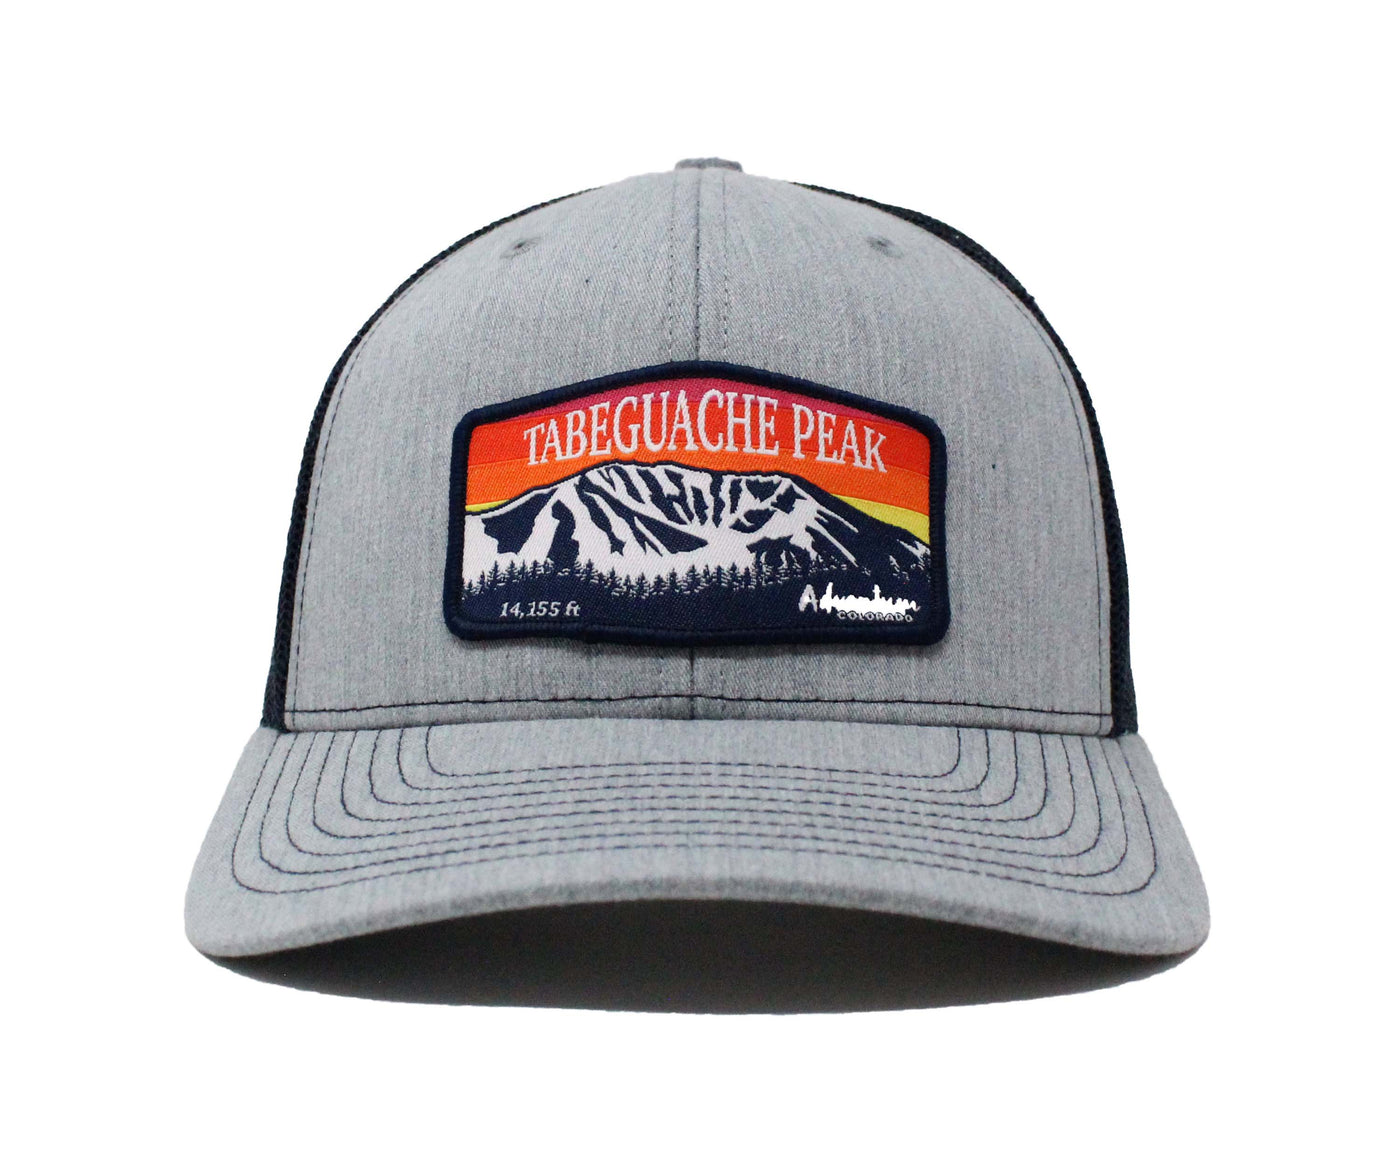 Tabeguache Peak Trucker Hat